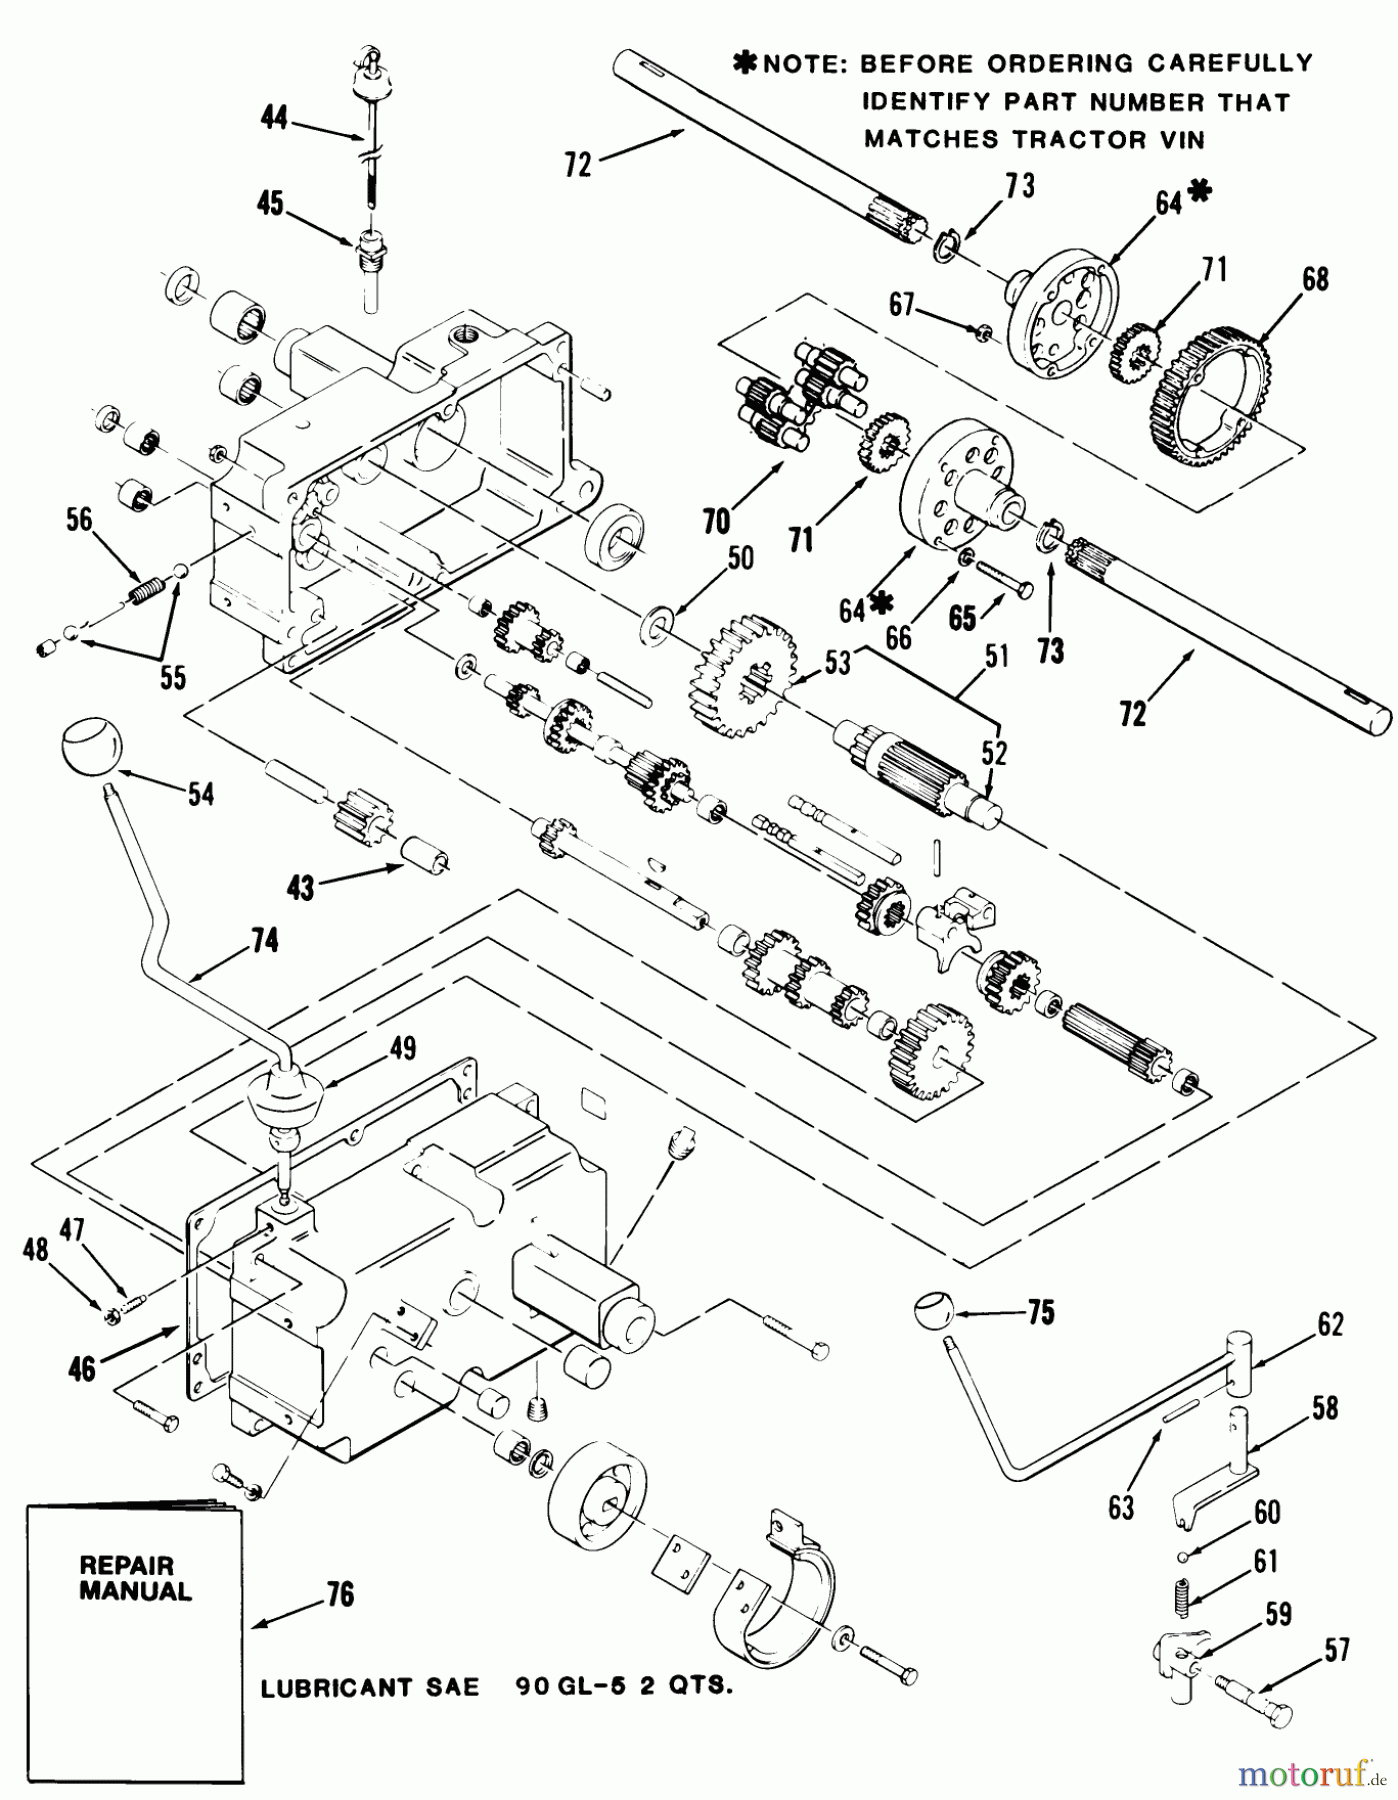  Toro Neu Mowers, Lawn & Garden Tractor Seite 1 21-12K802 (312-8) - Toro 312-8 Garden Tractor, 1986 MECHANICAL TRANSMISSION-8-SPEED #2